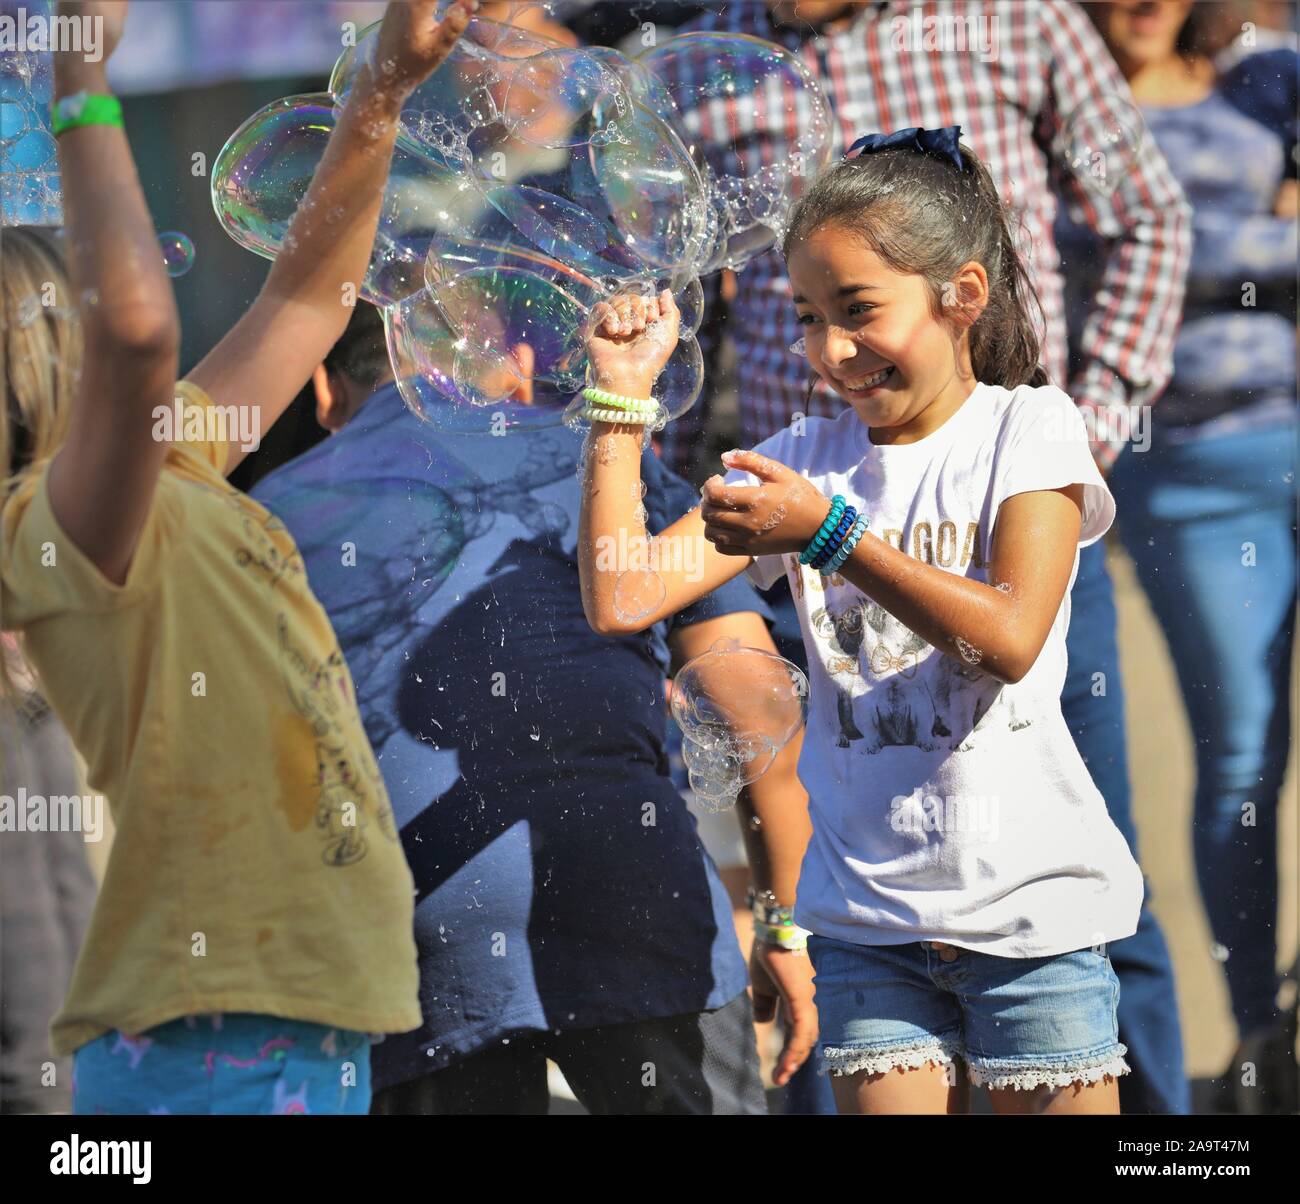 Ispanico messicano latina i bambini, i ragazzi e le ragazze a caccia di bolle dal circo fair act fatta con acqua e sapone per pubblico spettacolo e divertimento per tutta la famiglia Foto Stock